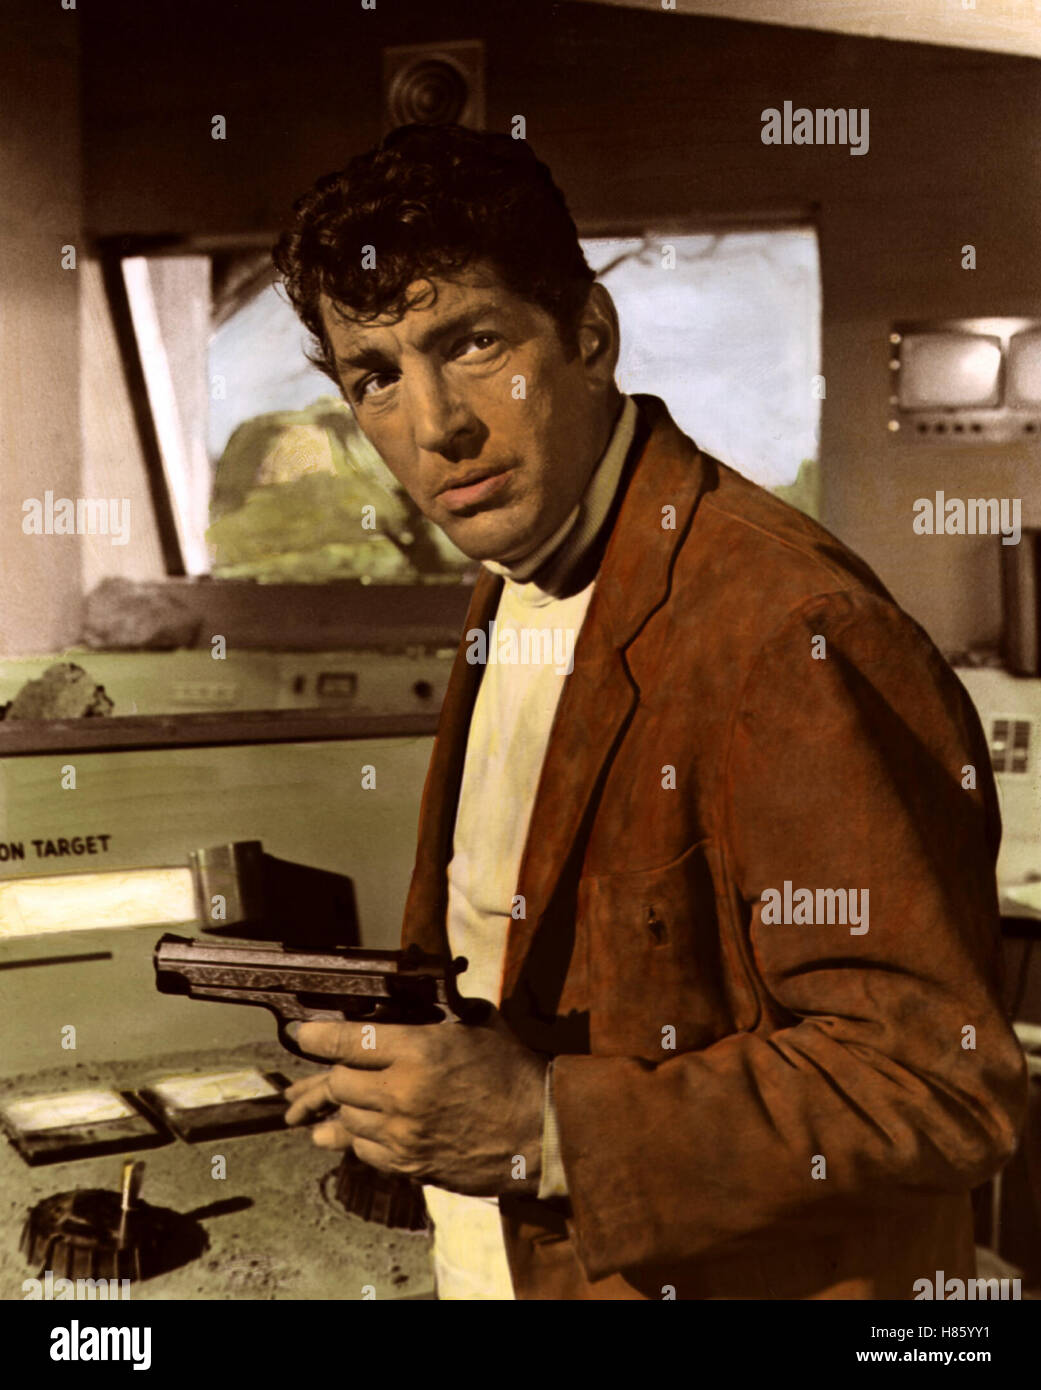 Leise flüstern die Pistolen, (THE SILENCERS) USA 1965, Regie: Phil Karlson, DEAN MARTIN, Stichwort: Pistole Stock Photo